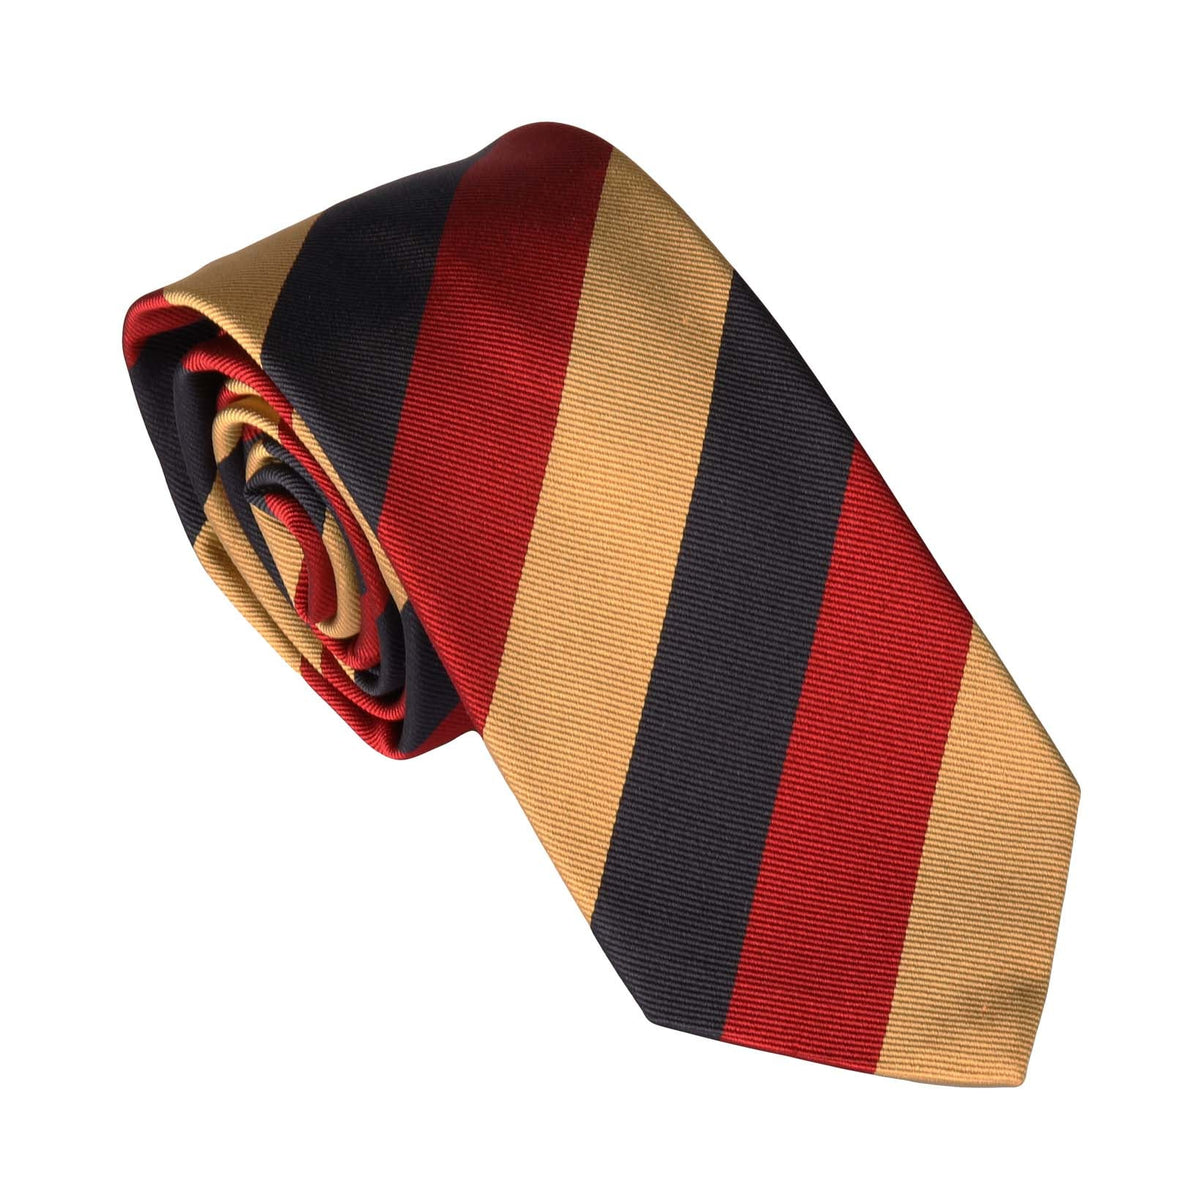 Krawatte mit Regiment Streifen-C.H.-Conrad Hasselbach Shoes &amp; Garment